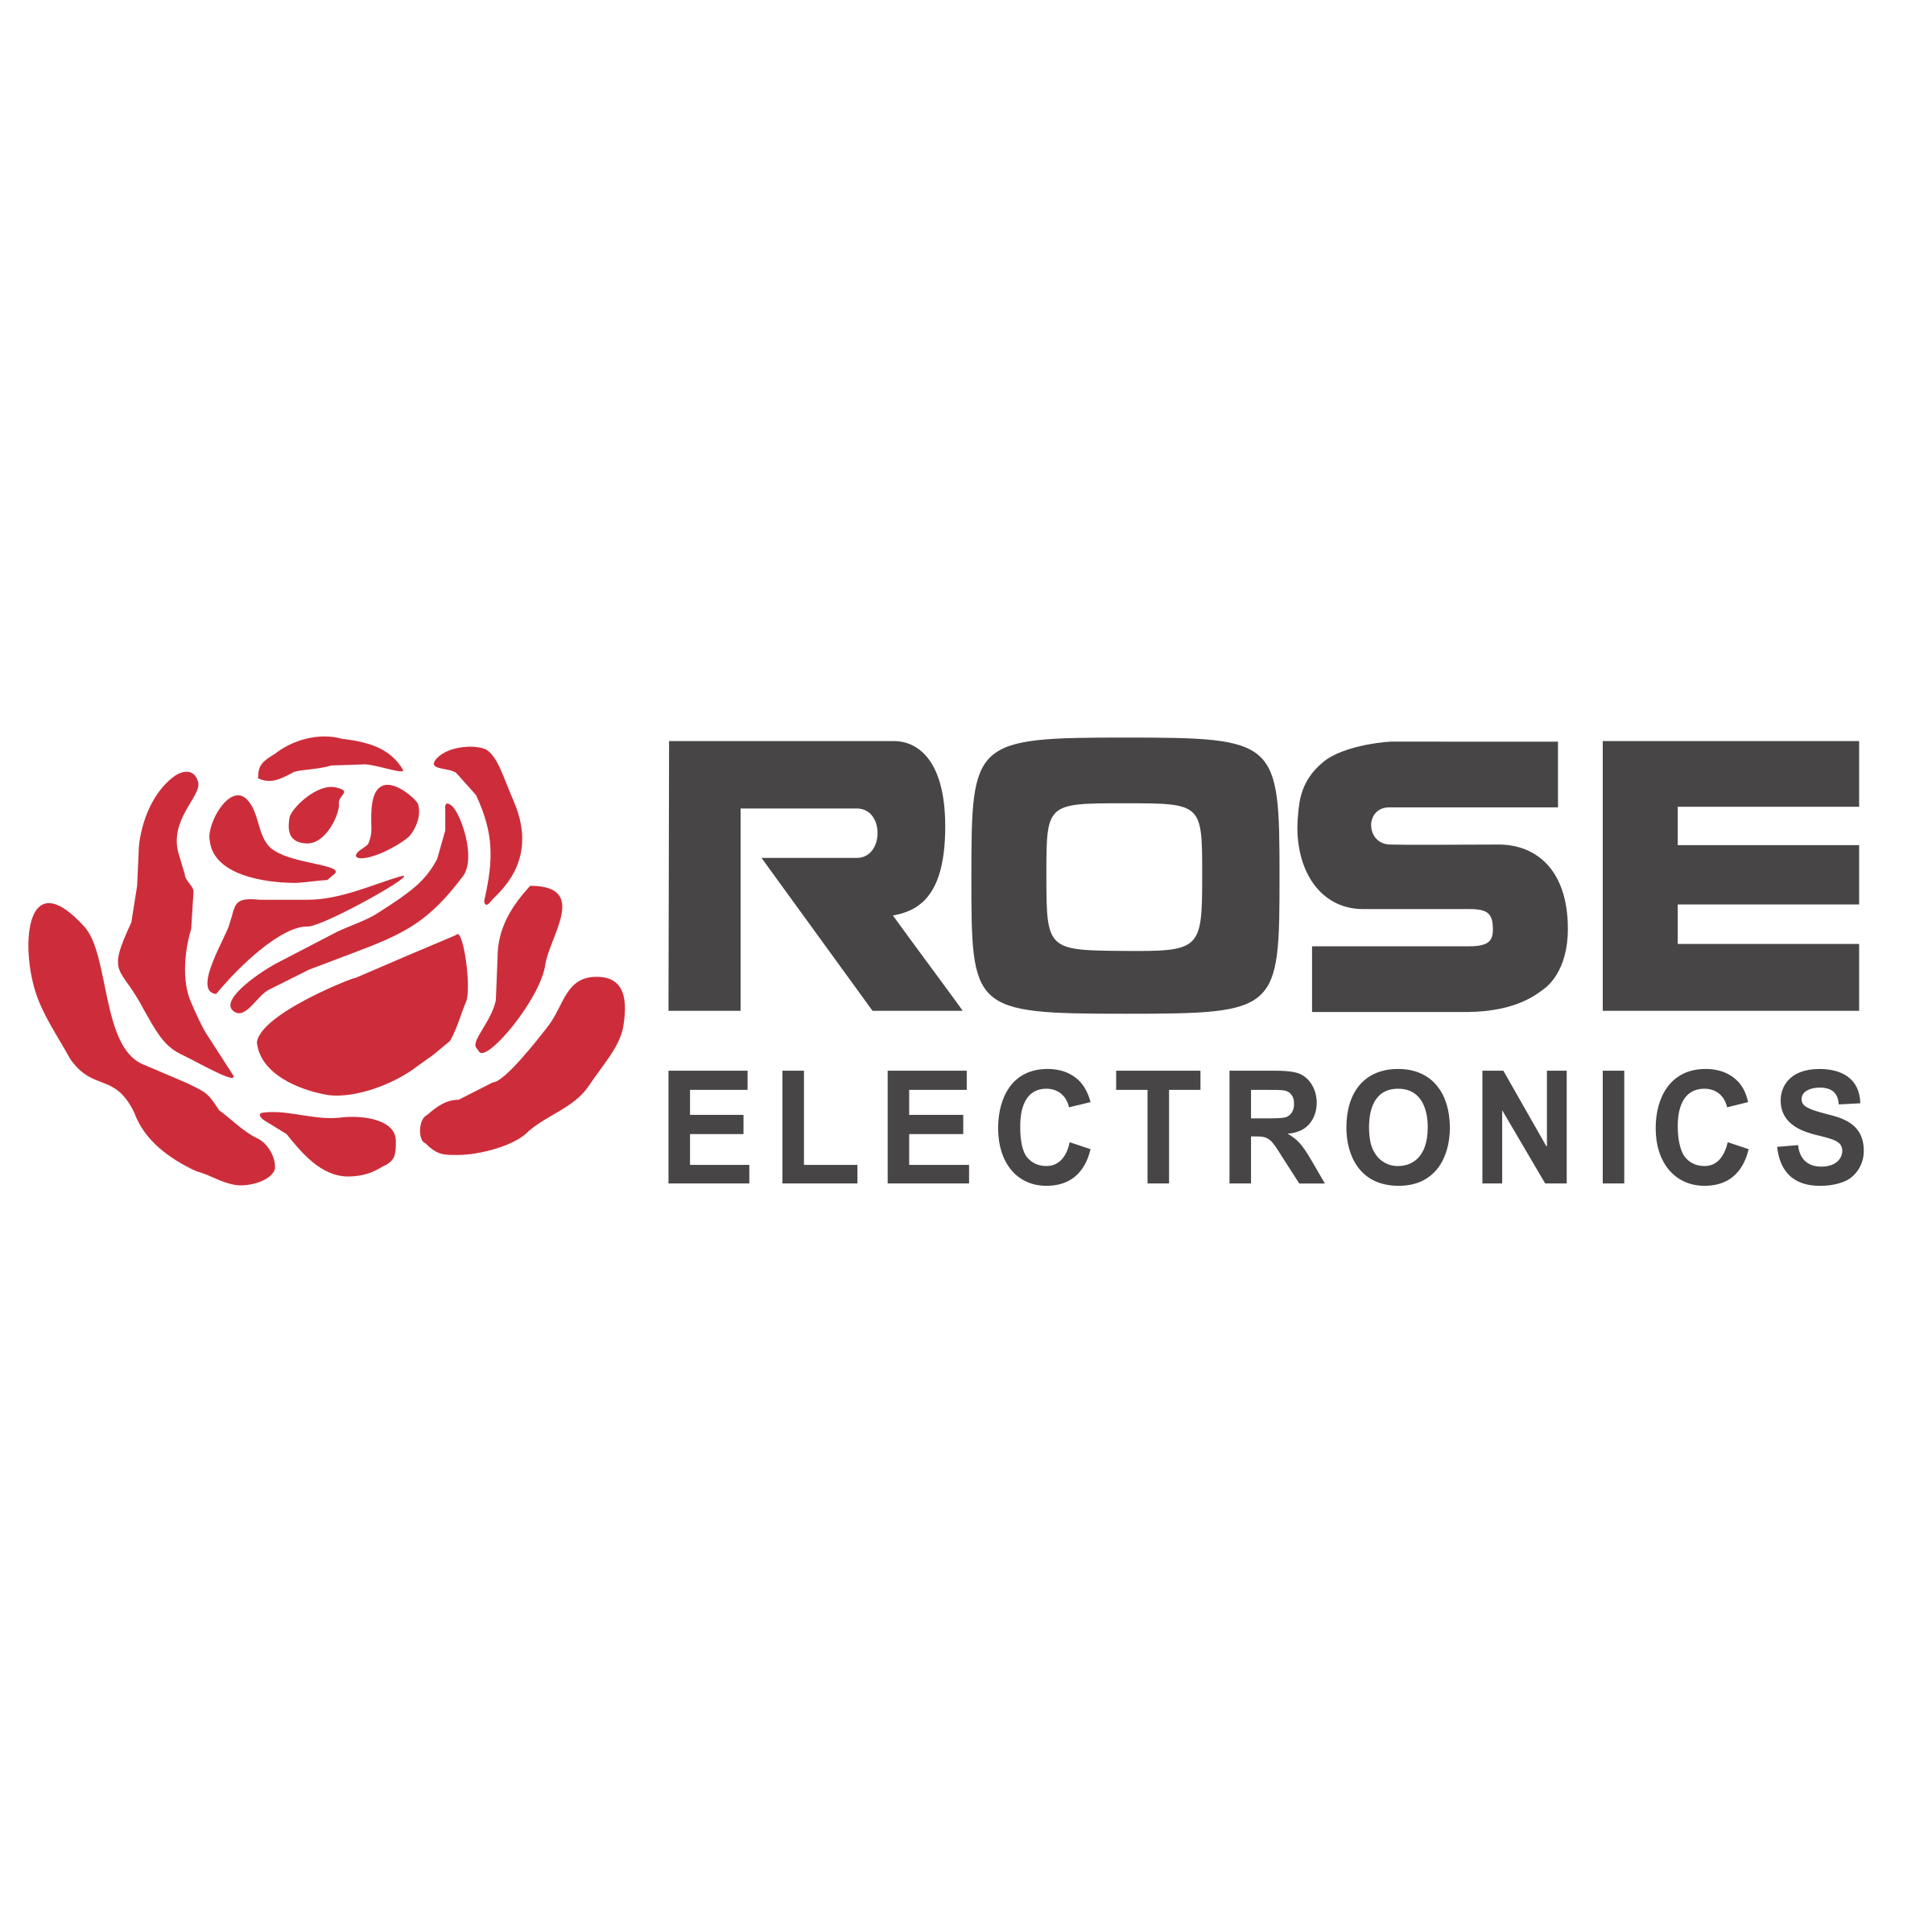 Reaf Logo - Rose Electronics Logo PNG Transparent & SVG Vector - Freebie Supply